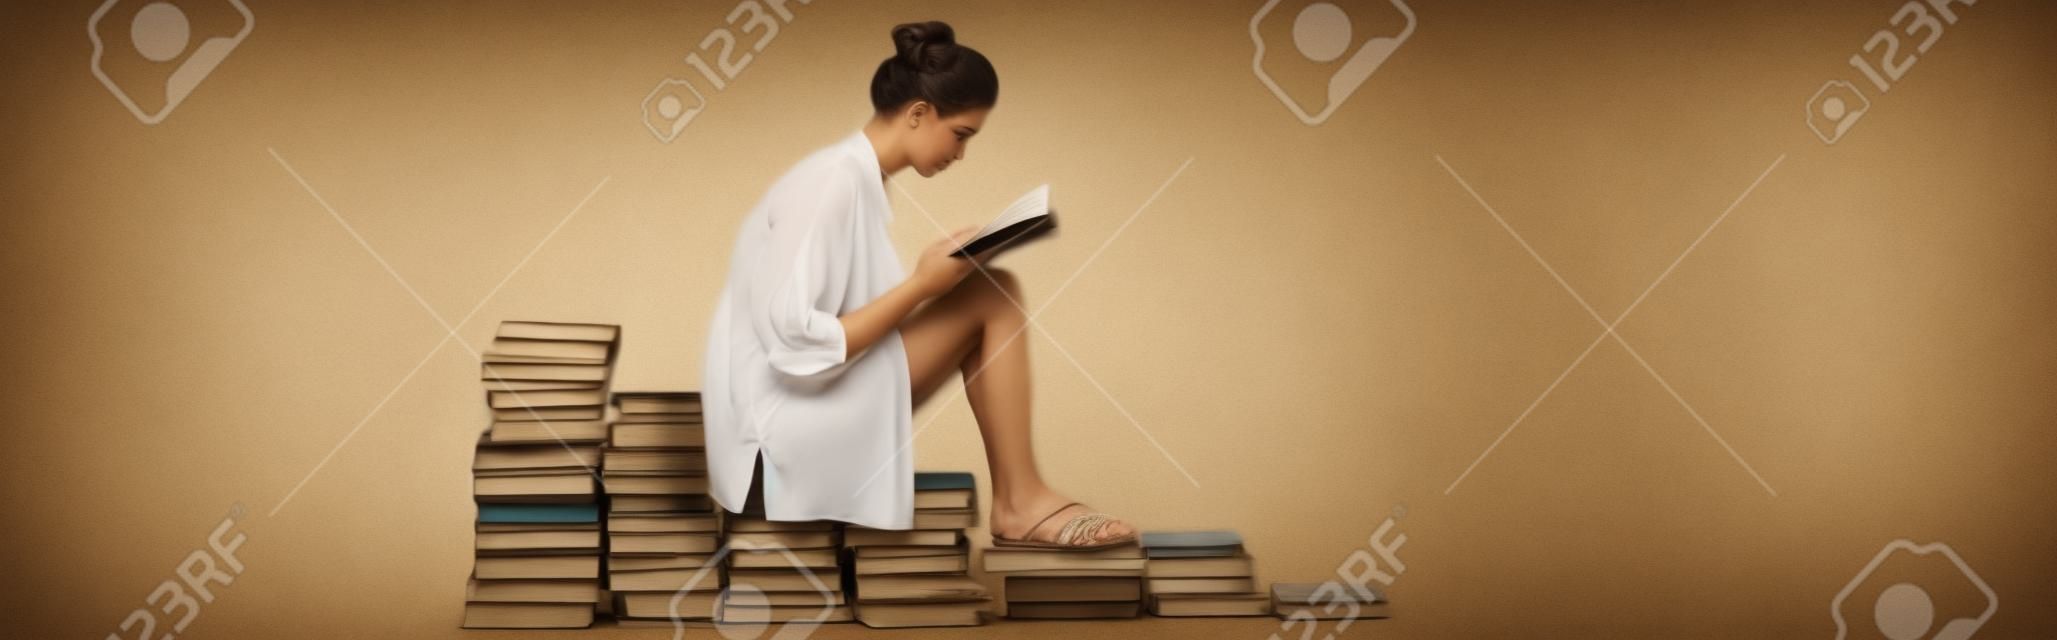 흰색, 배너에 책 더미에 앉아있는 동안 읽는 샌들에 젊은 여자의 측면 보기